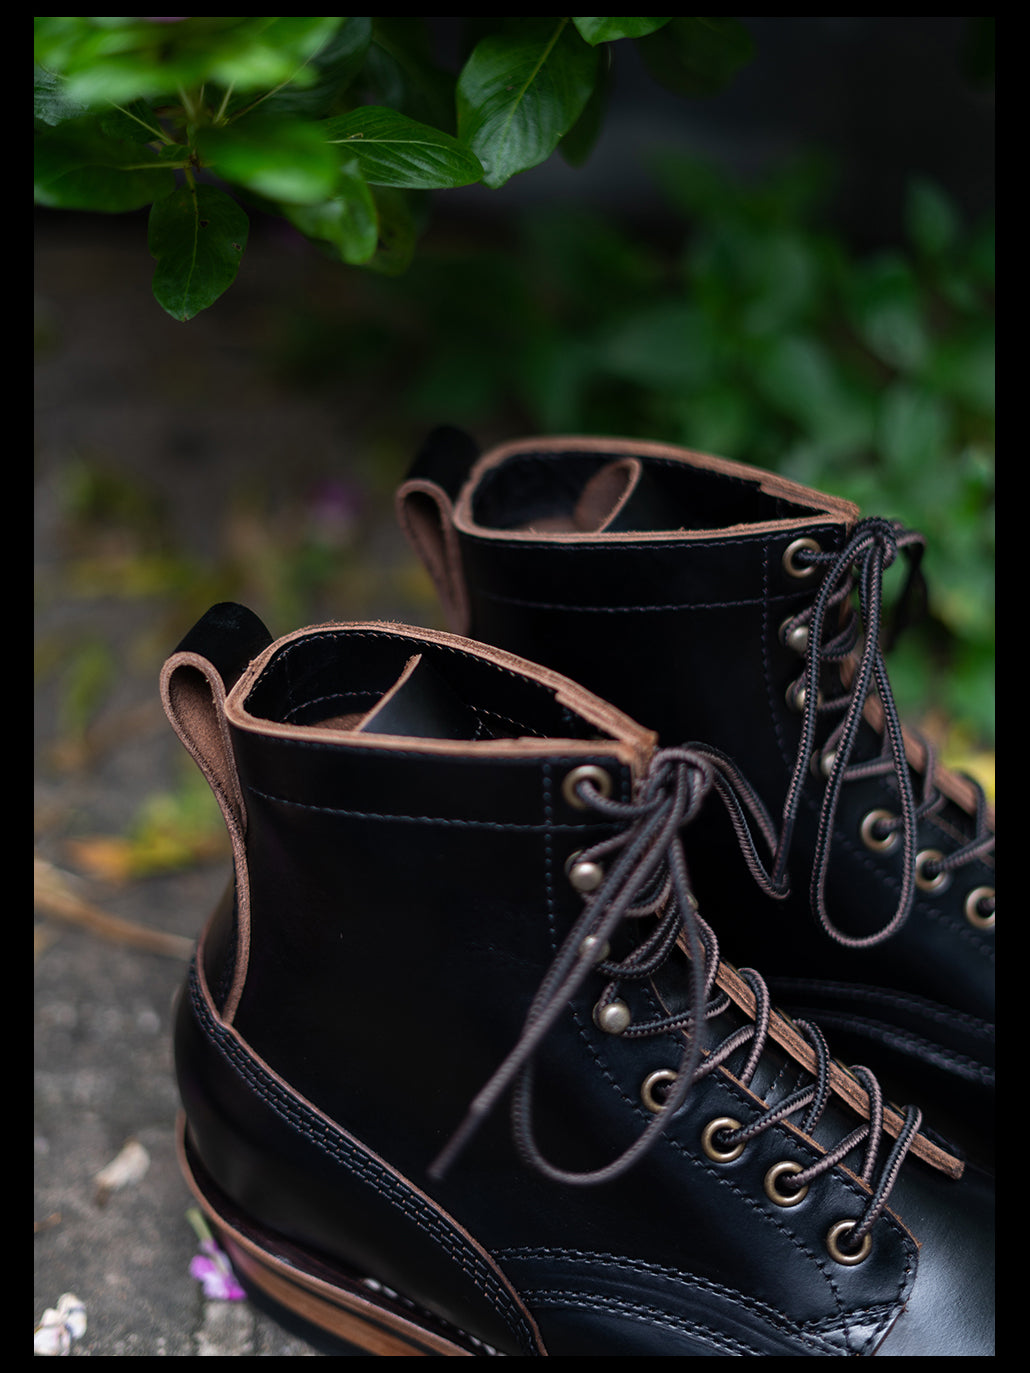 Men's Tea Core Leather Service Boots